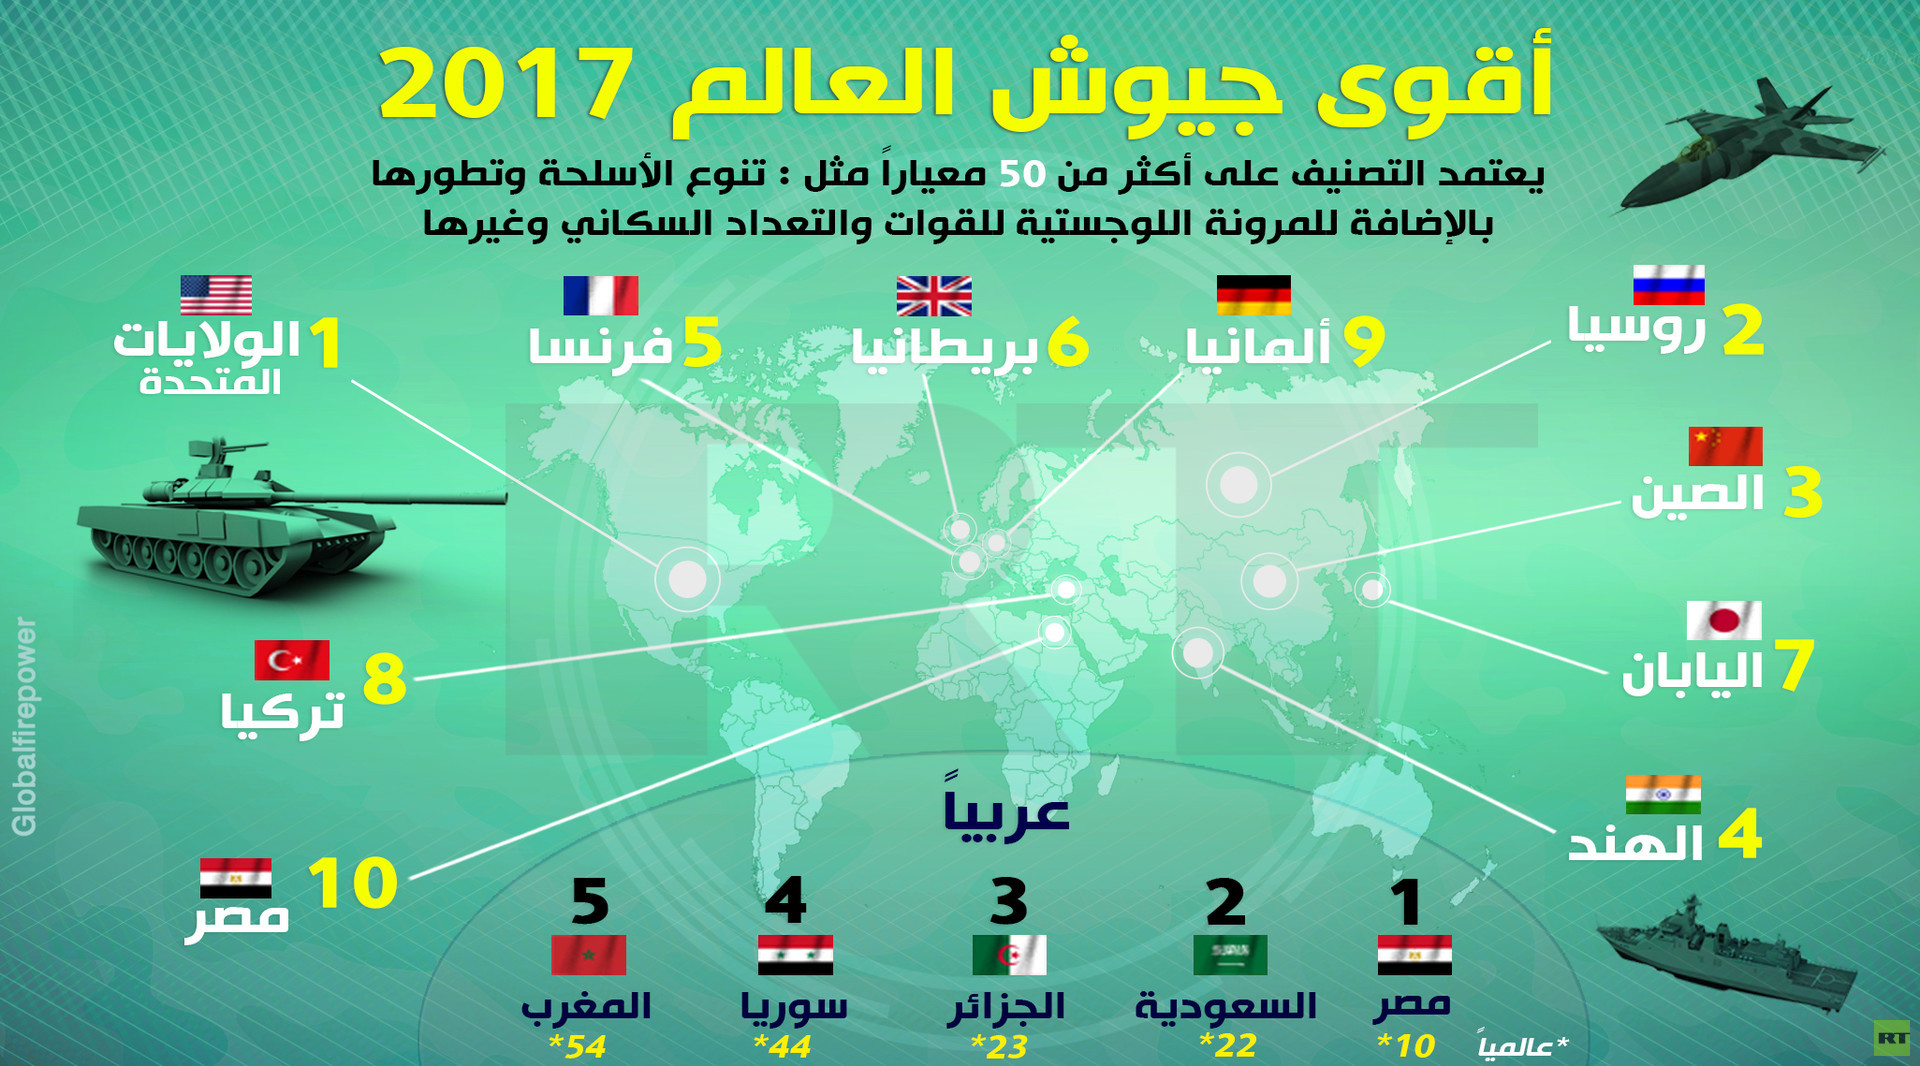 بالإنفوجراف الجيش المصرى العاشر عالميا والأول عربيا لعام 2017 اليوم السابع